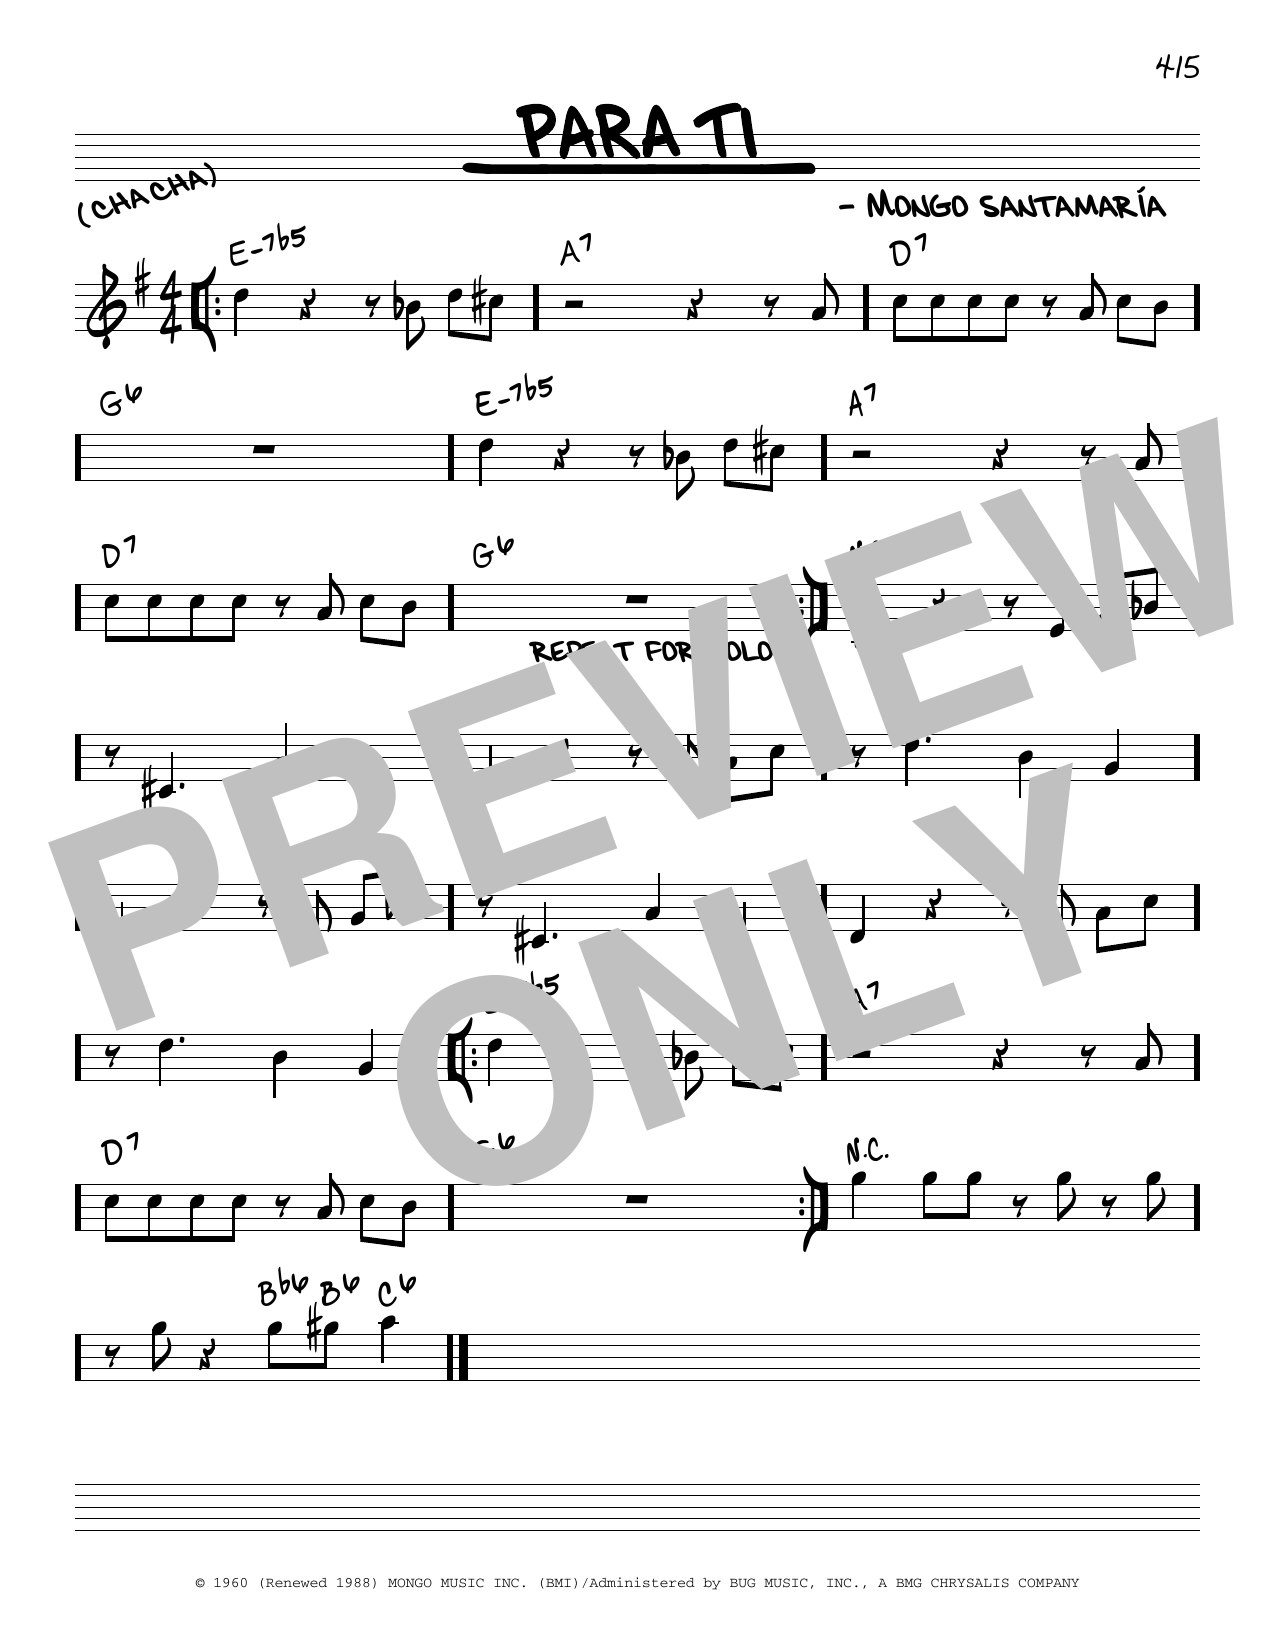 Mongo Santamaria Para Ti Sheet Music Notes & Chords for Real Book – Melody & Chords - Download or Print PDF